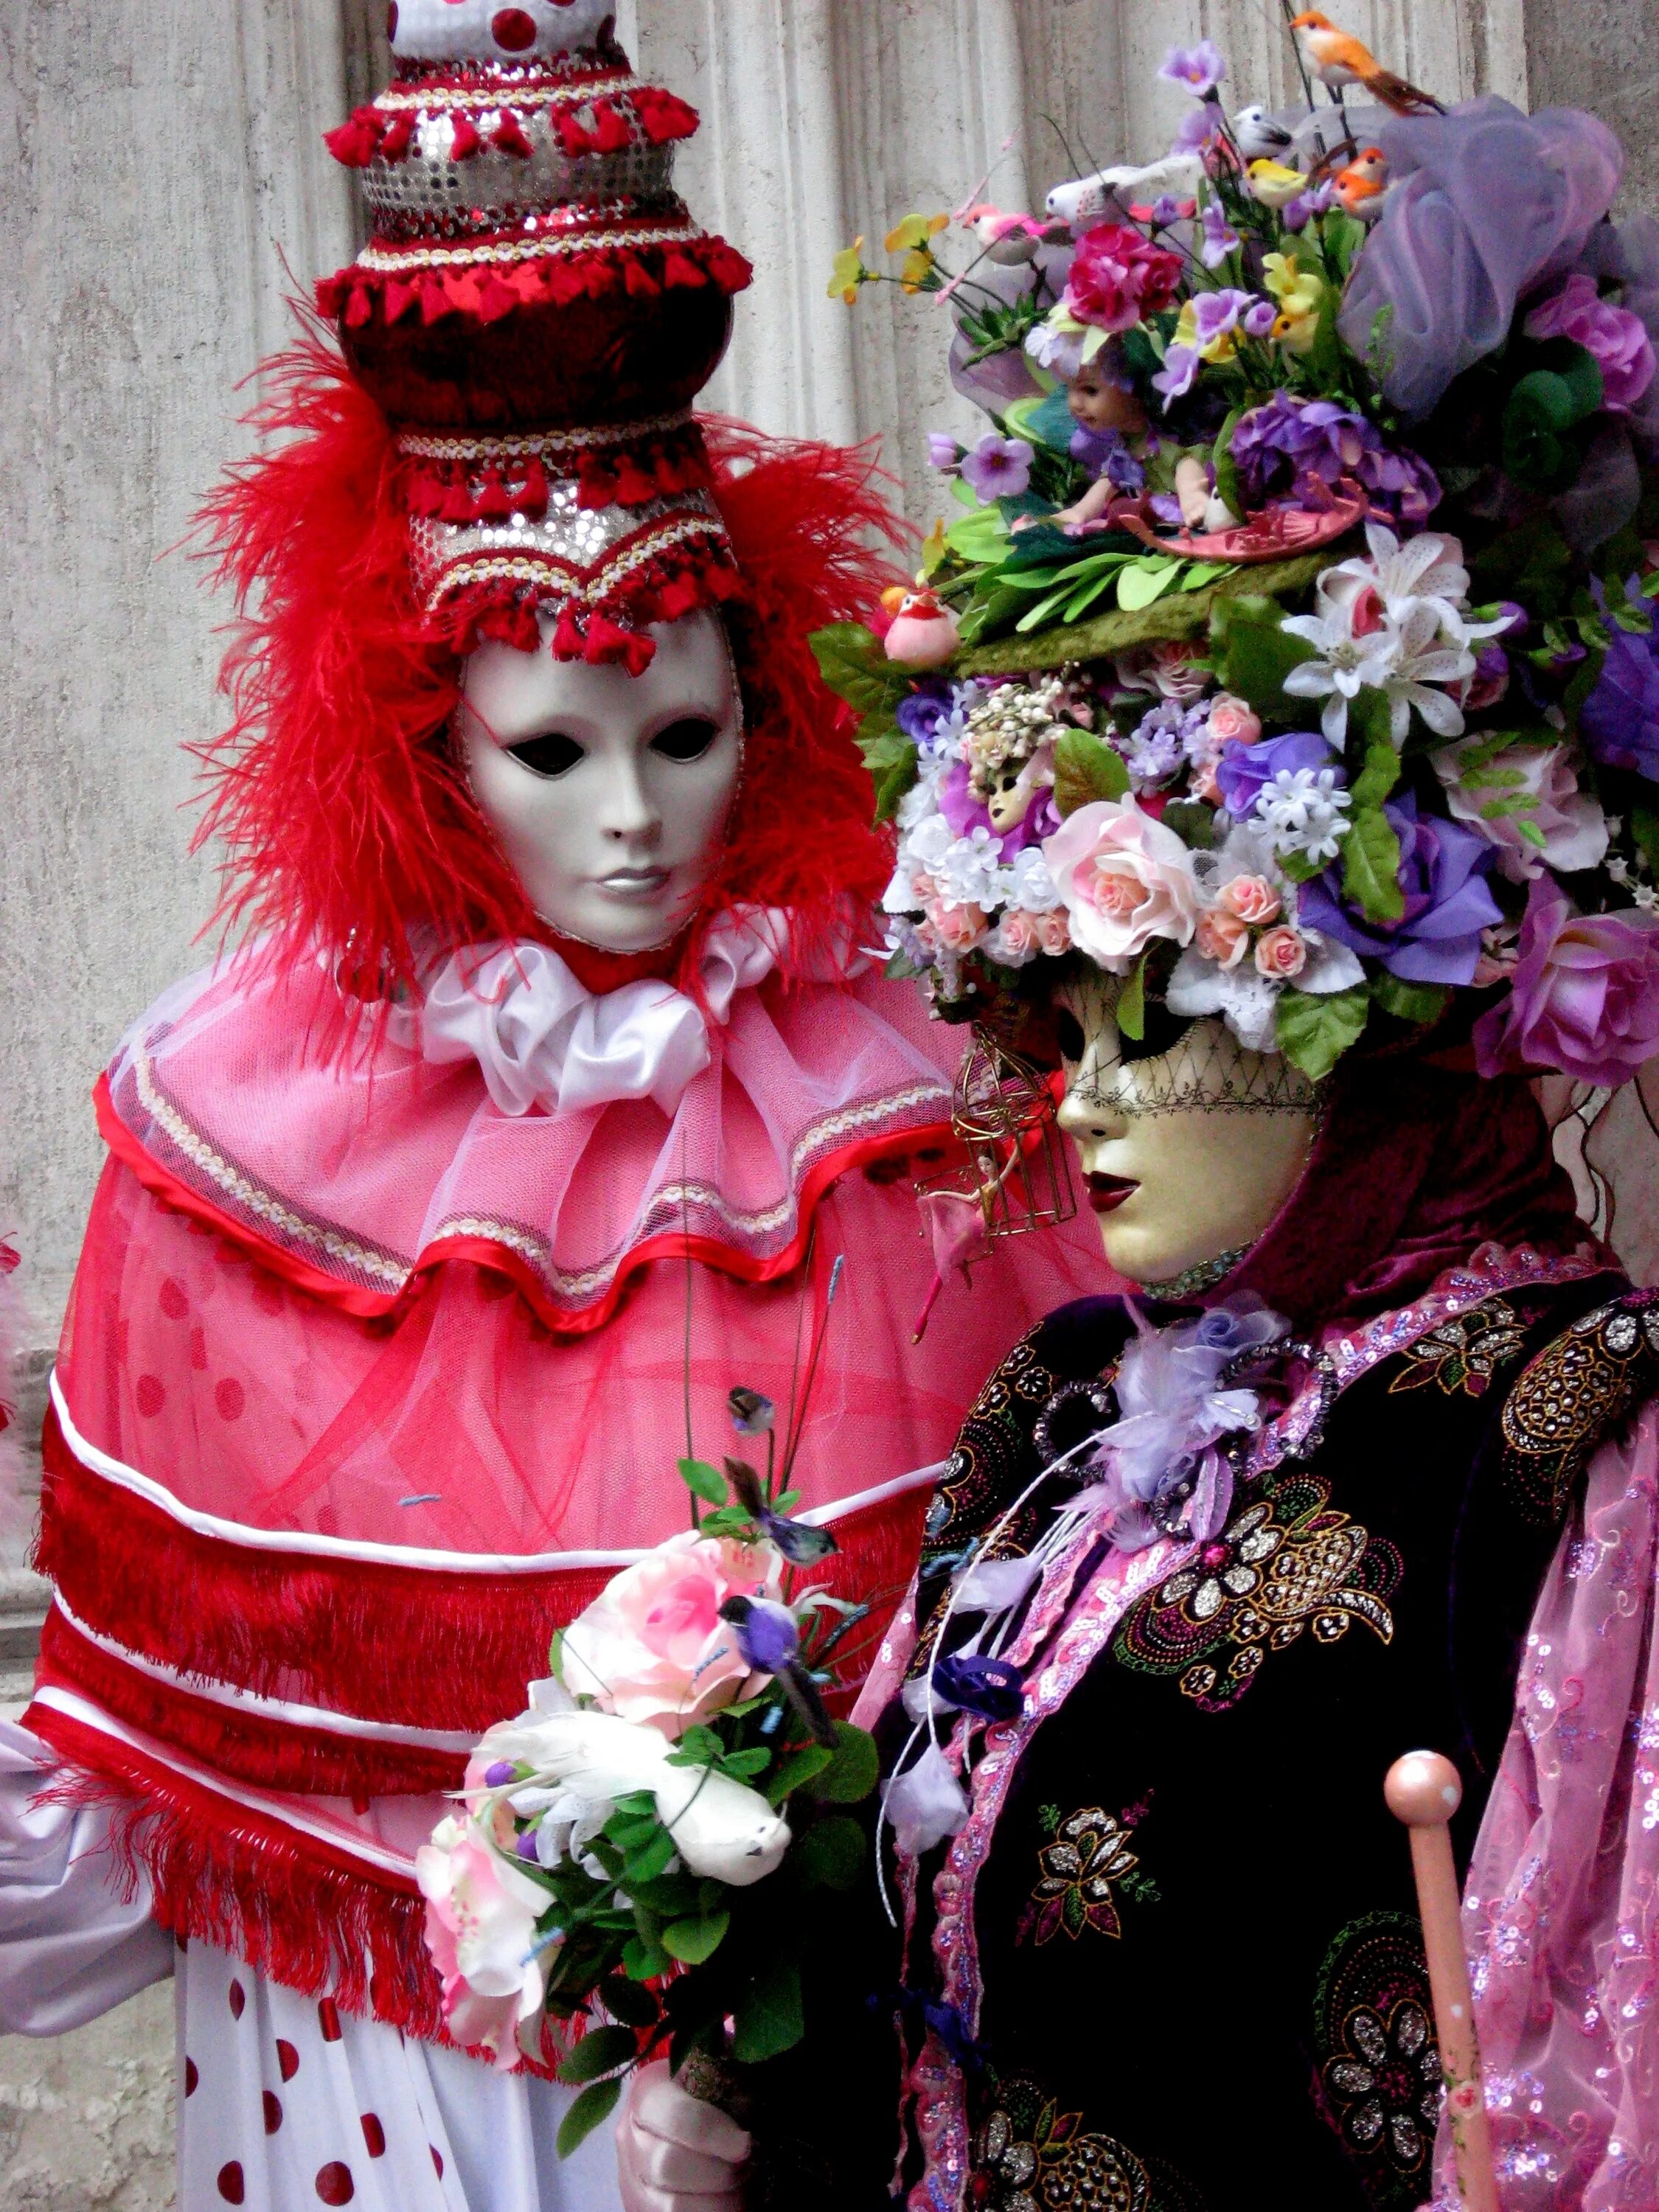 Цветы карнавальные. Карнавал в Венеции костюмы маски. Цветочный карнавал. Венецианский костюм цветы. Цветы в венецианском стиле.